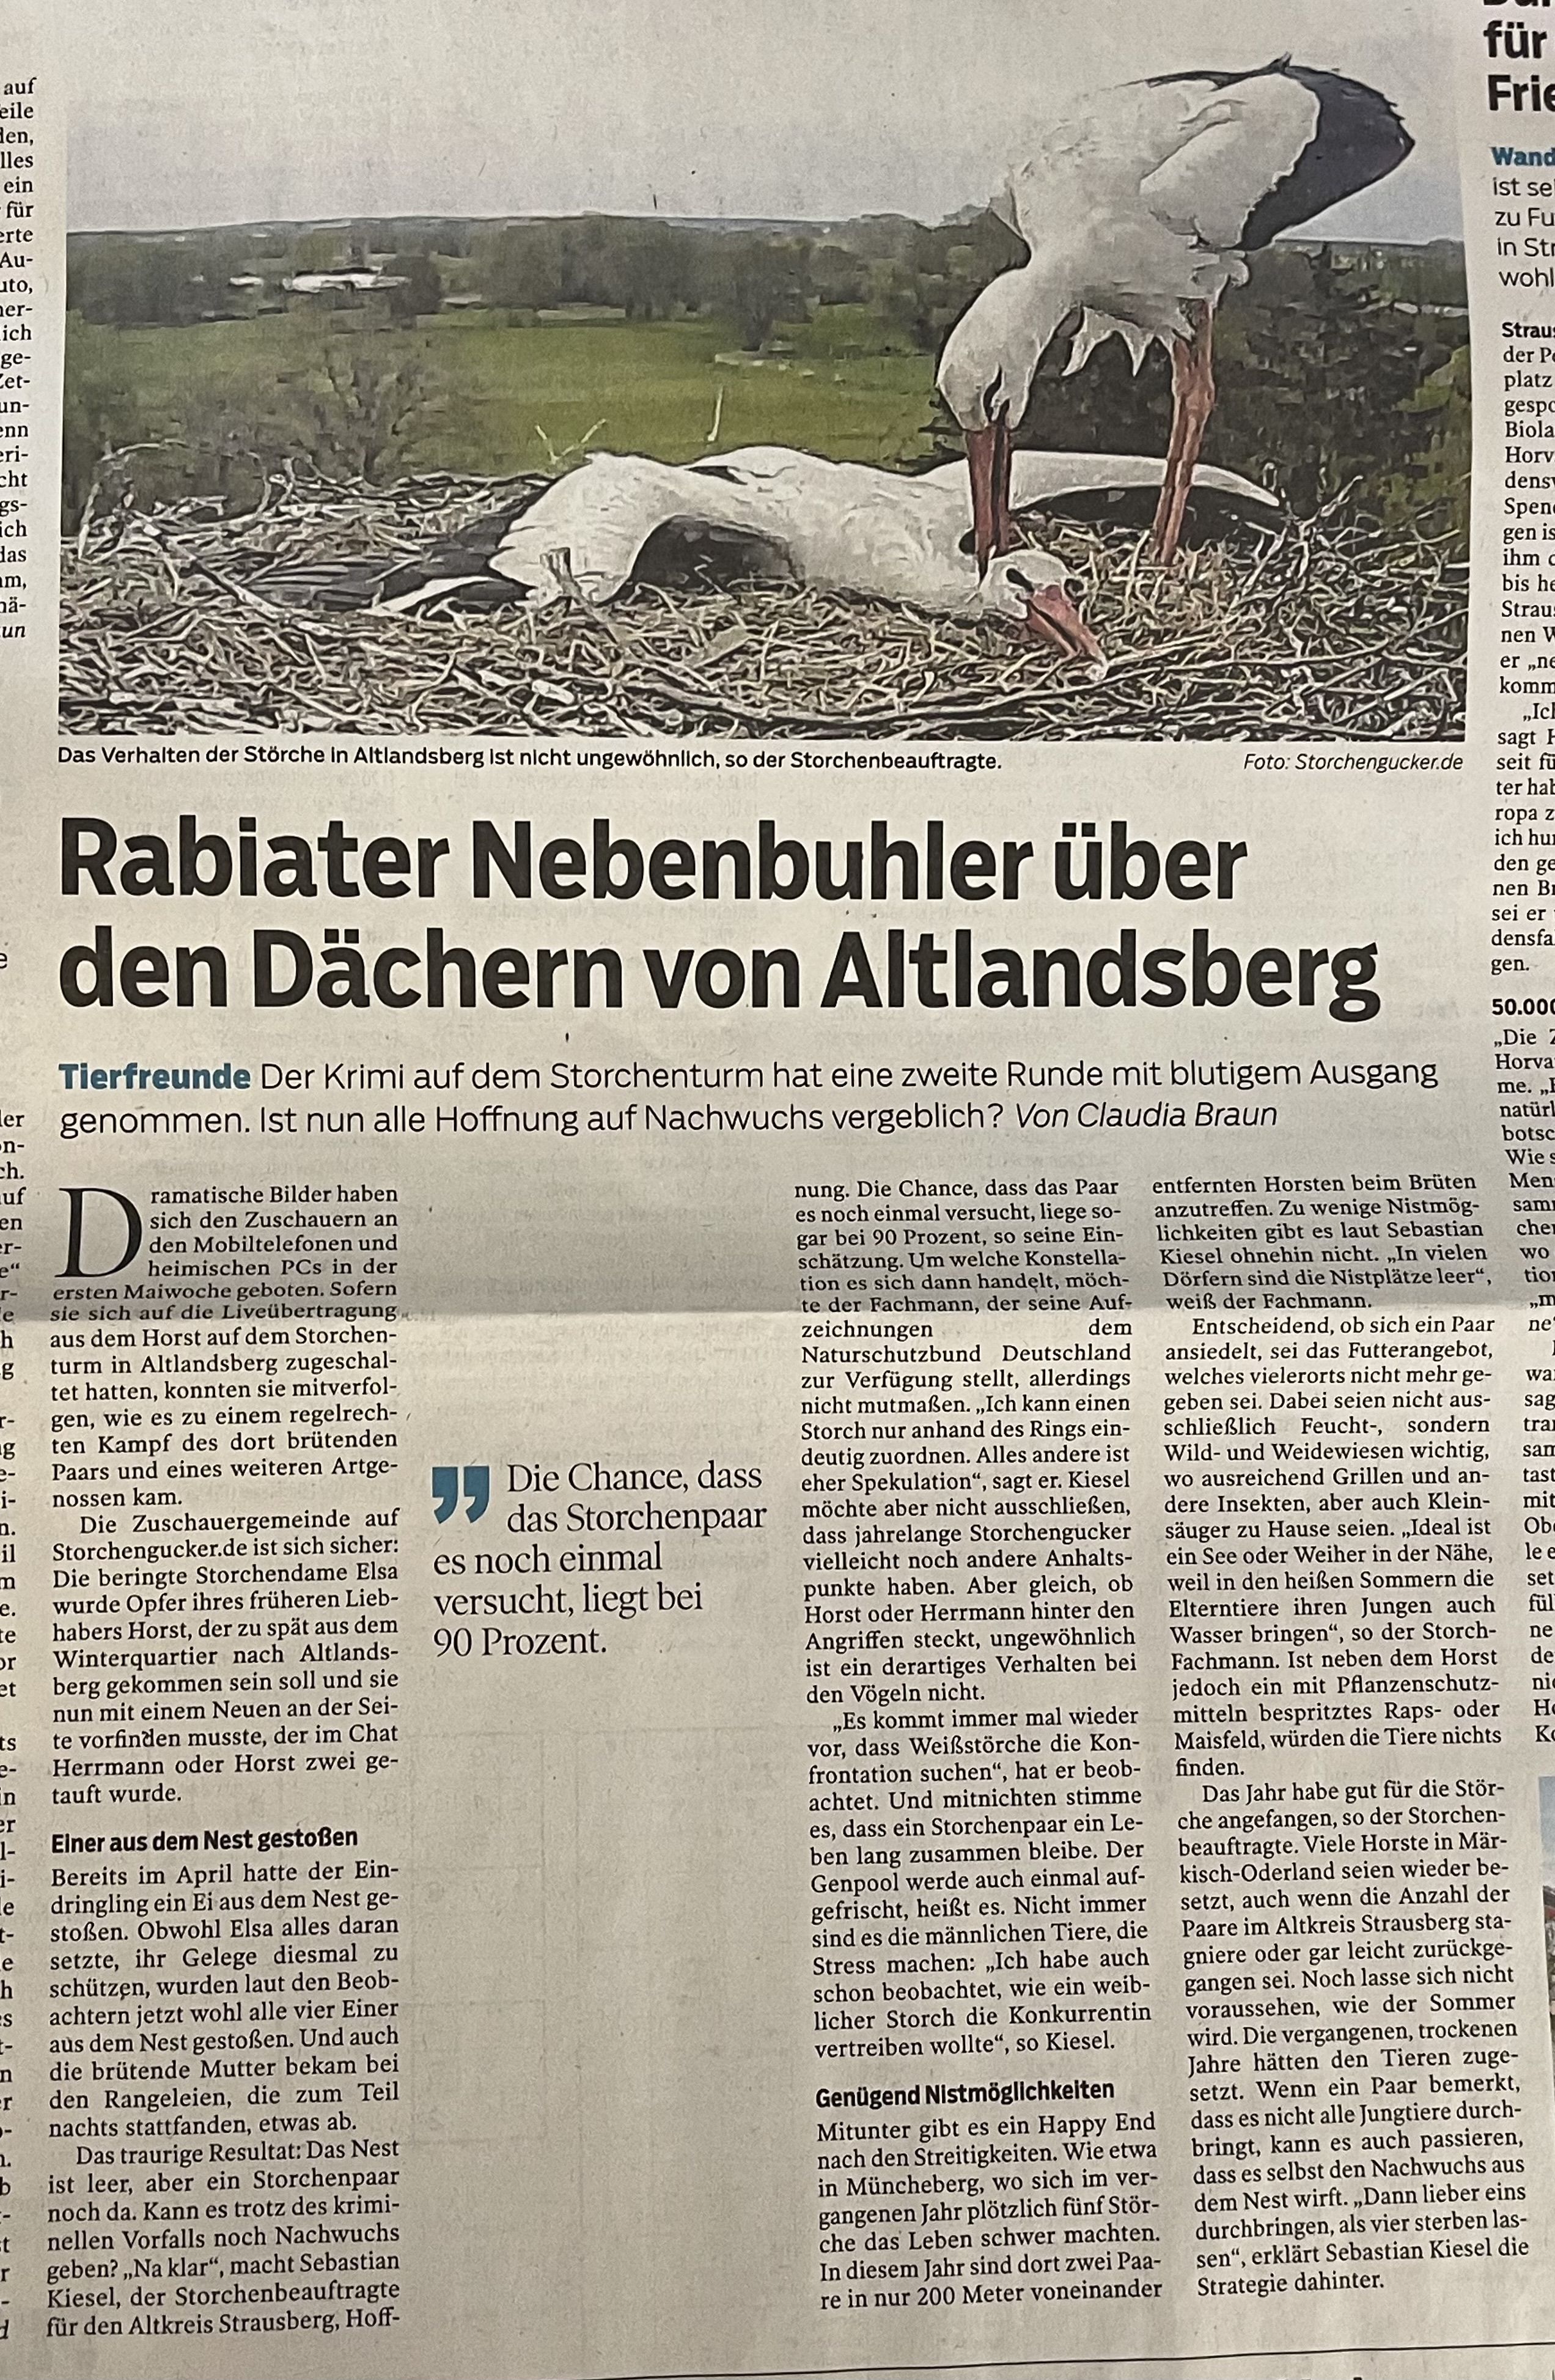 Informationen über das Storchennest Altlandsberg  Img_9042kiebv